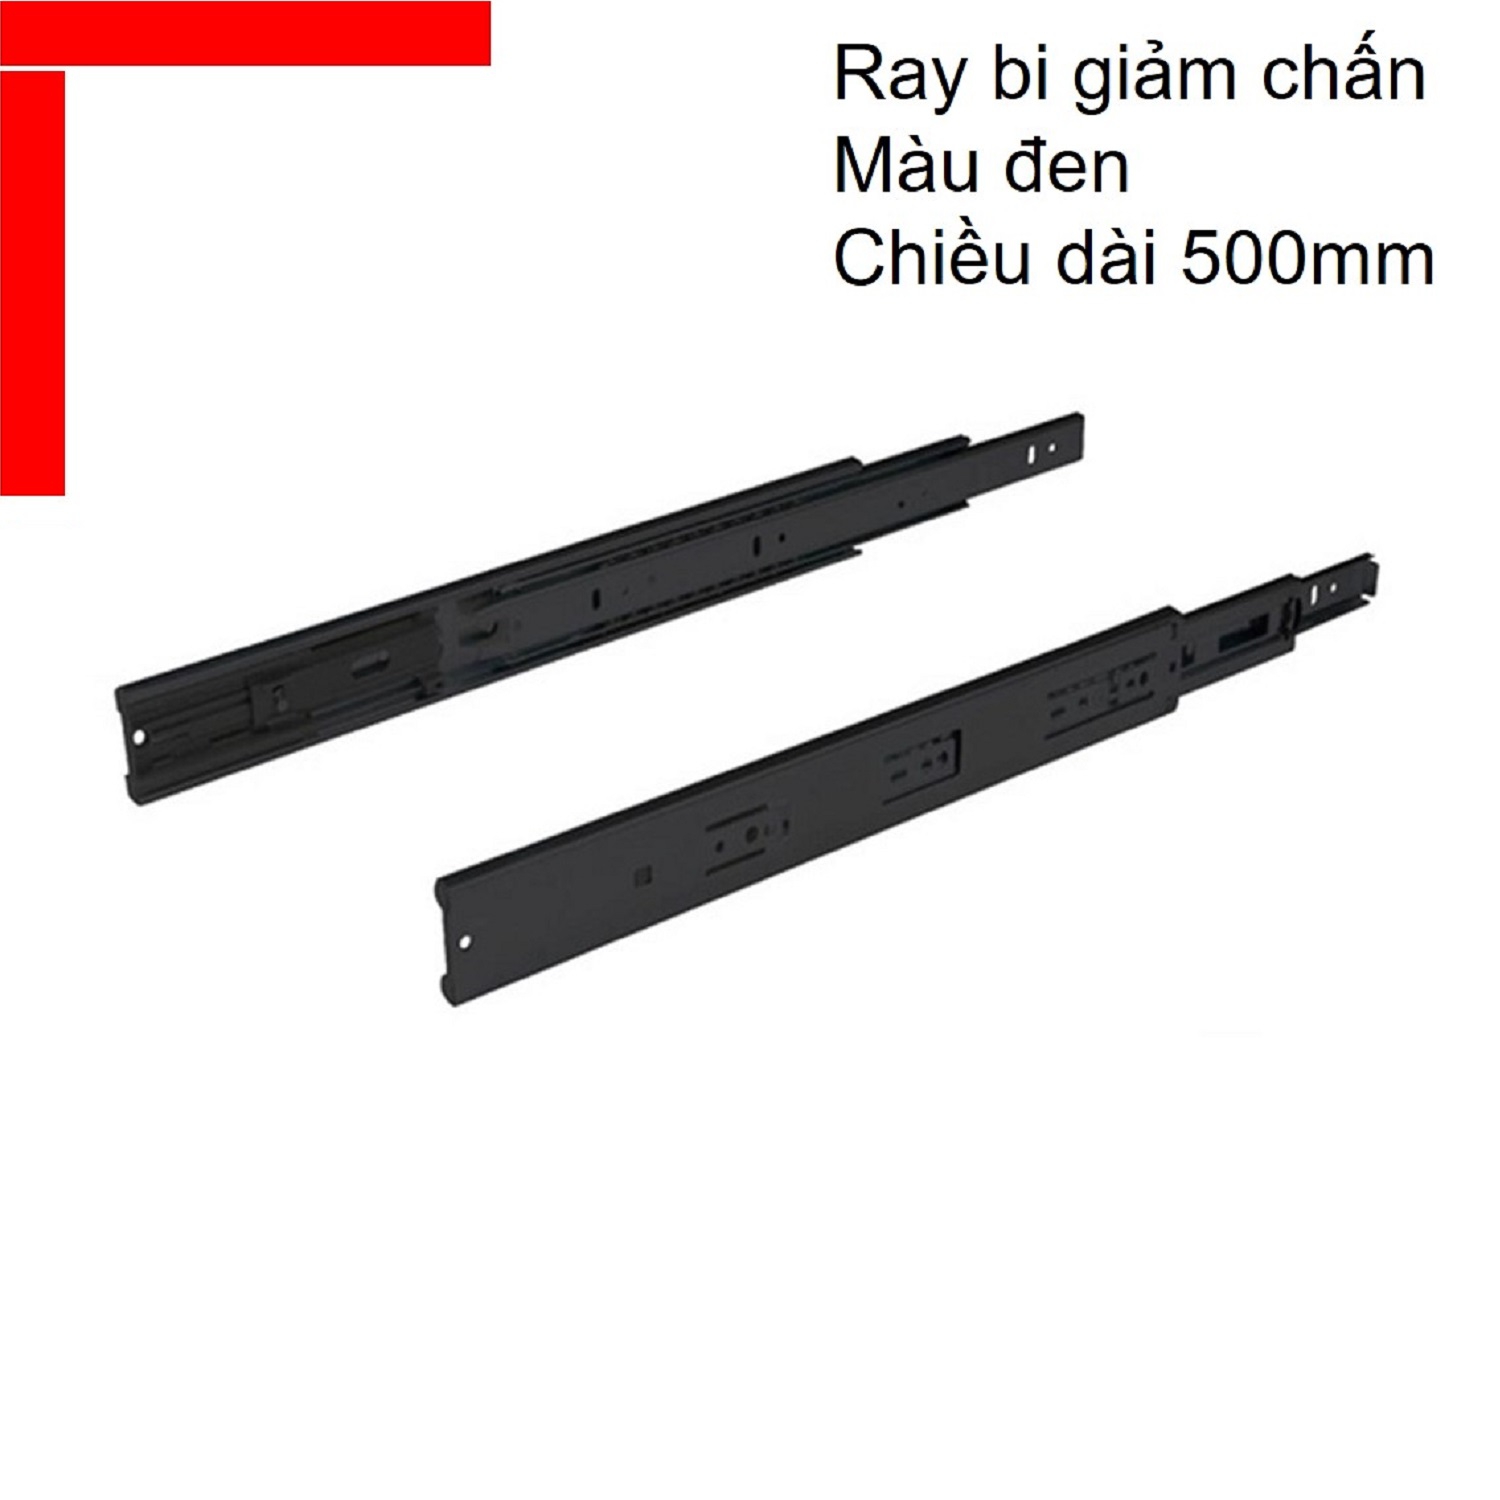 Ray bi giảm chấn Hafele chiều dài 500mm màu đen 494.02.075